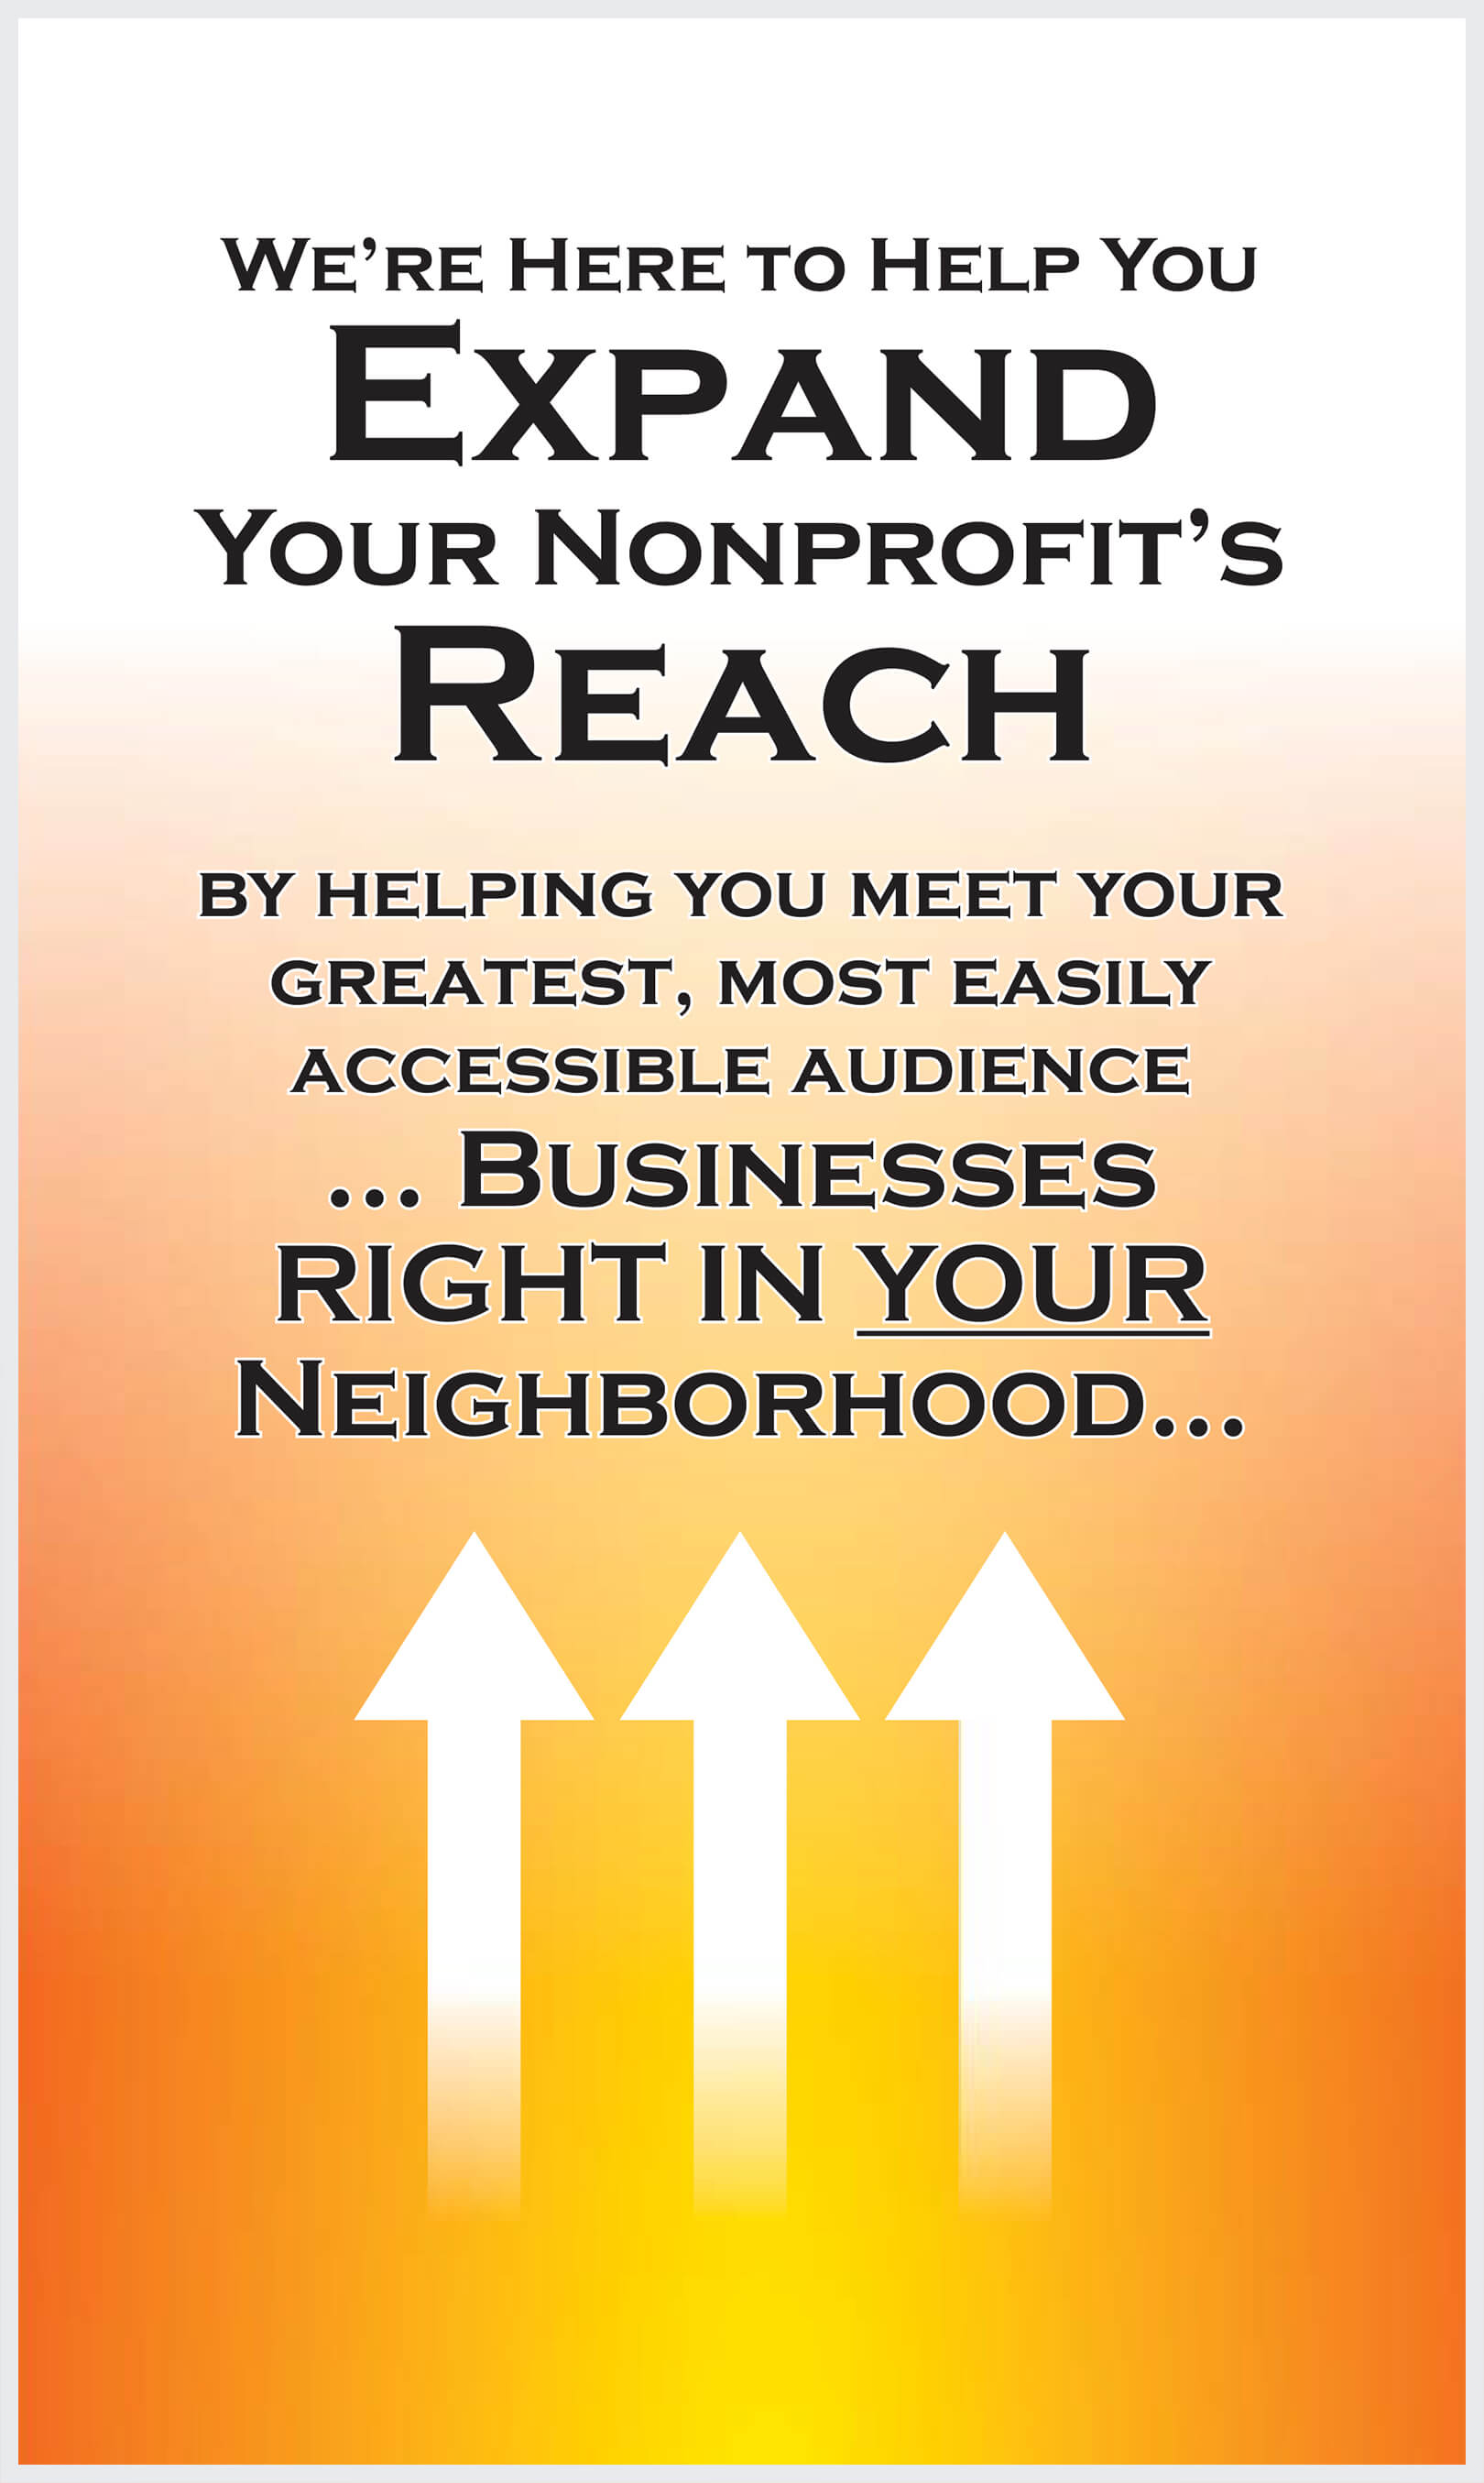 Expand Your Nonprofit's Reach!